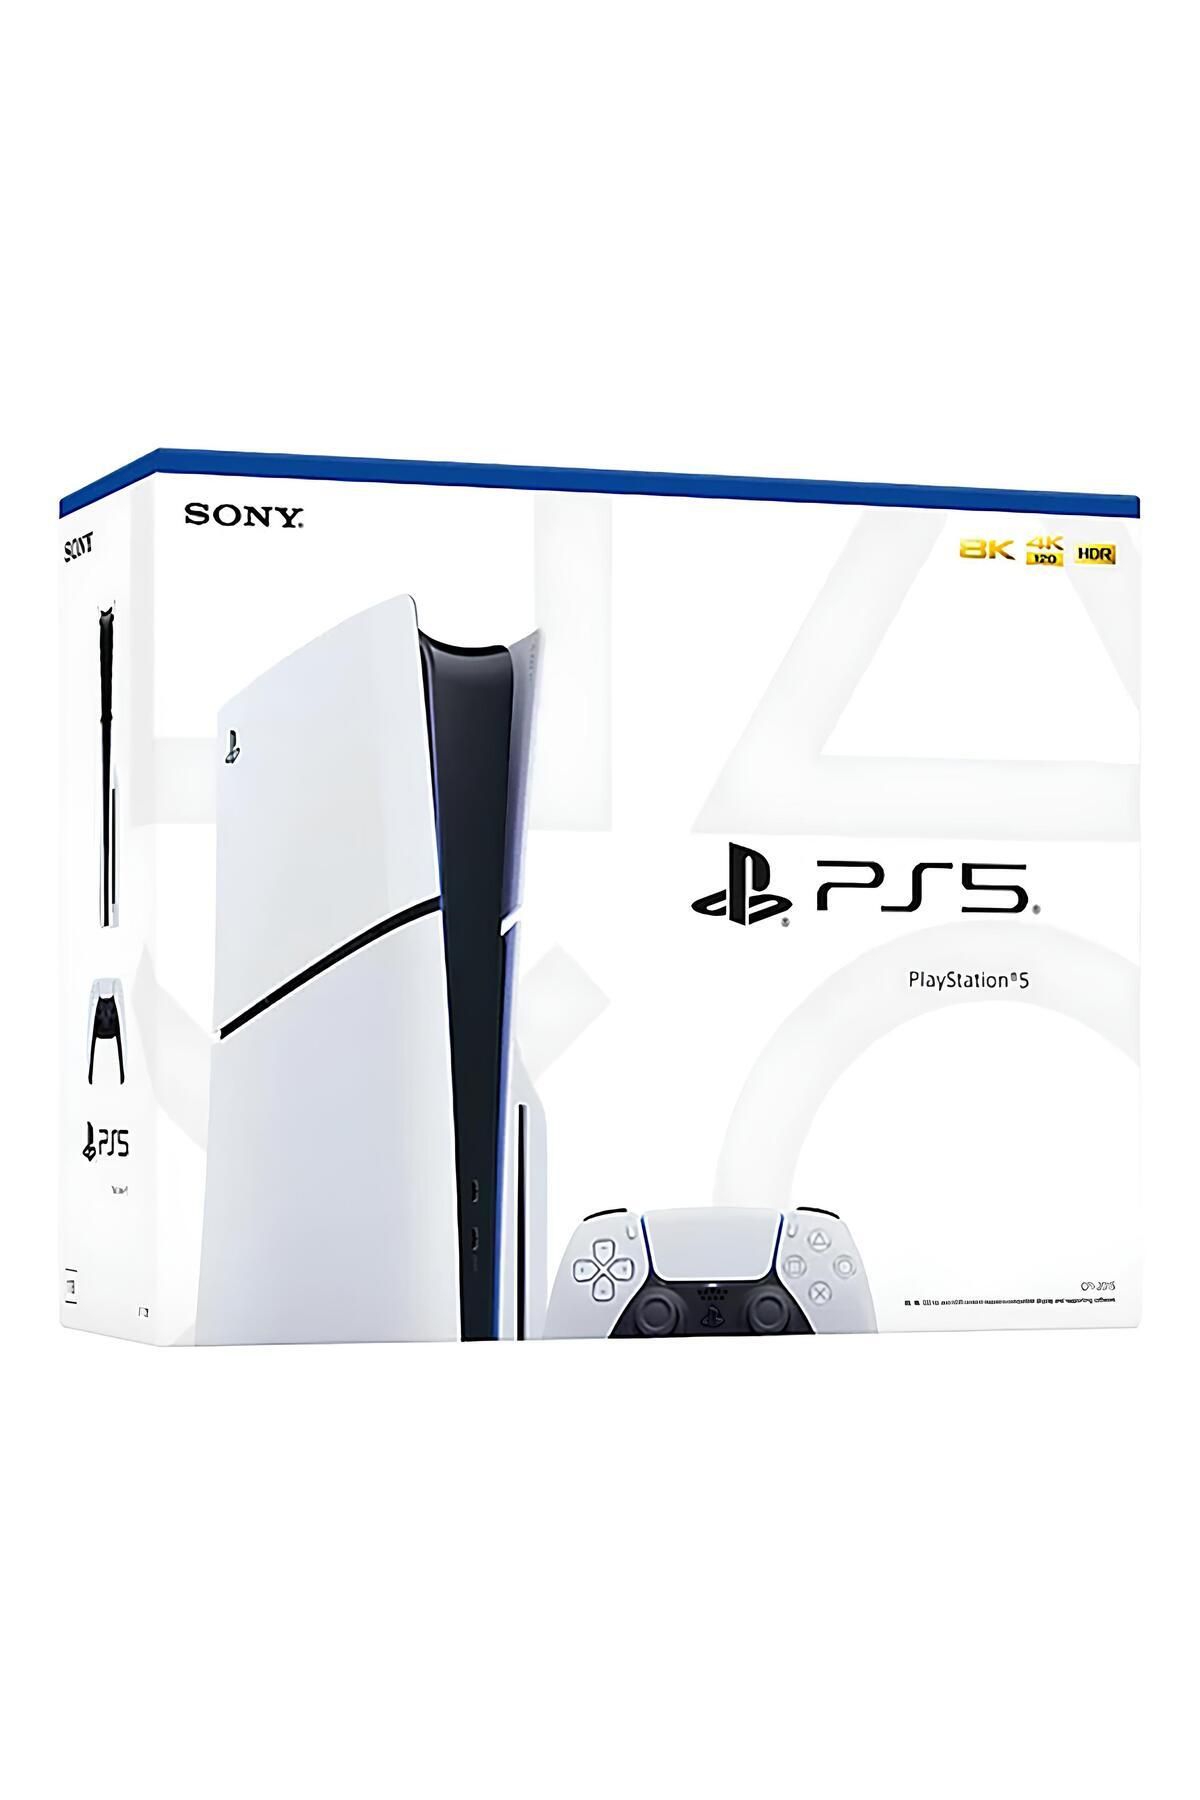 Sony Playstation 5 Slim Standart Edition 1TB Türkçe Menü (İthalatçı Garantili)